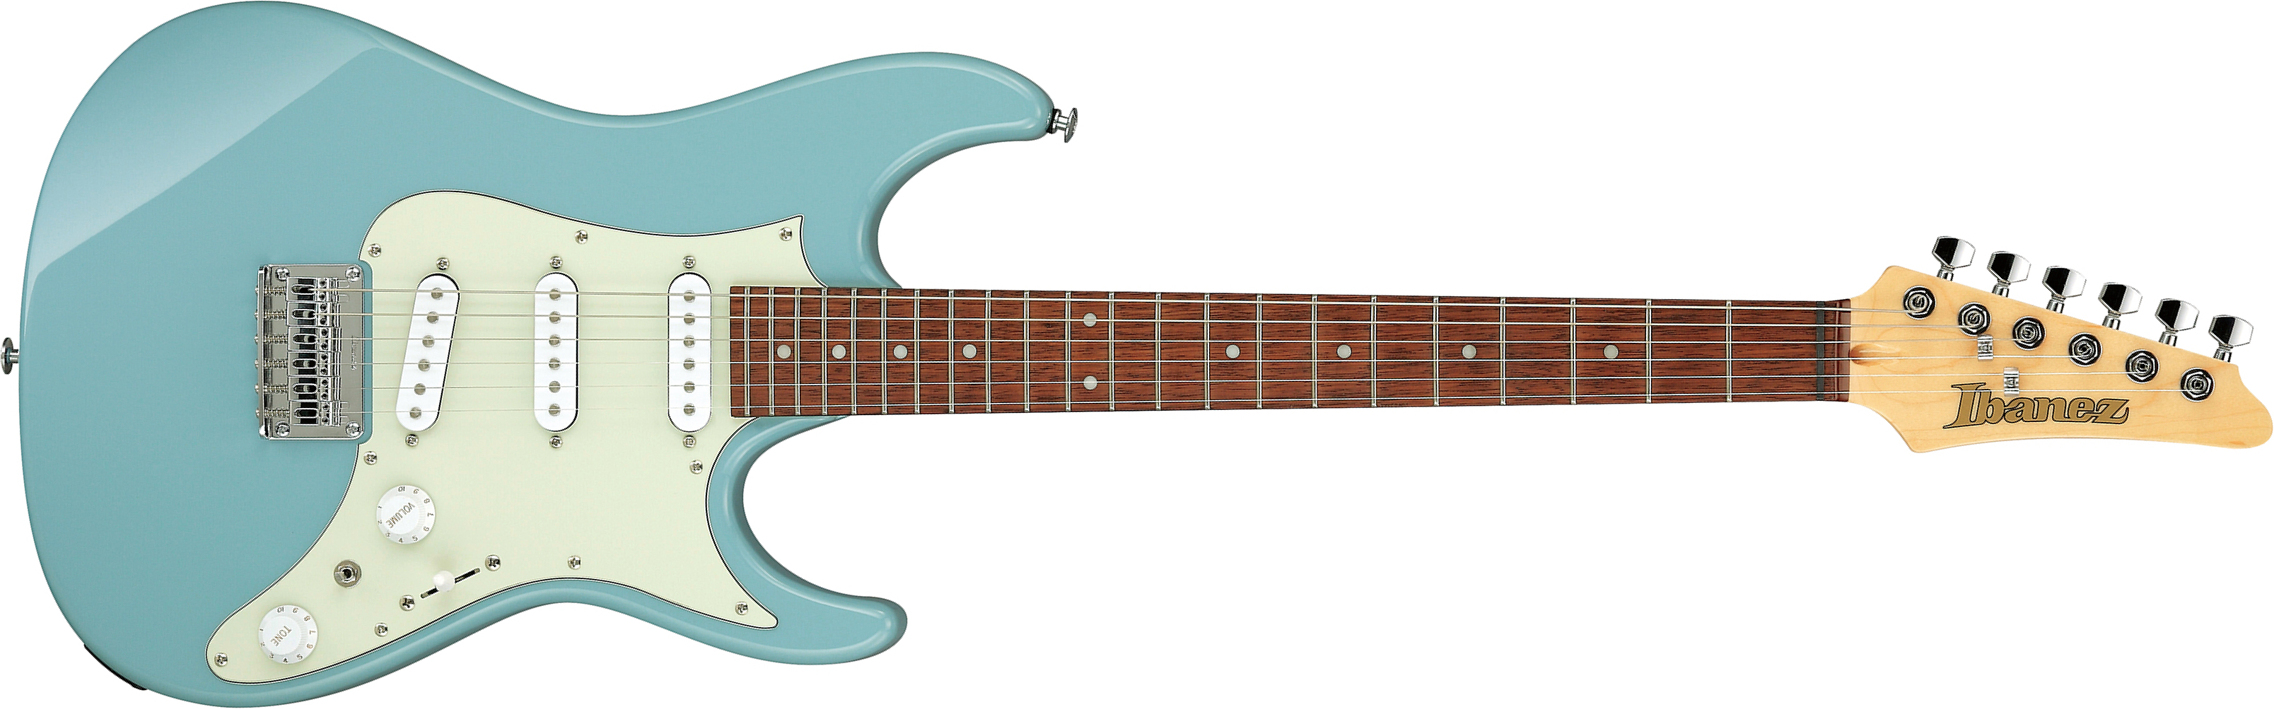 Ibanez Azes31 Prb Standard 3s Trem Jat - Purist Blue - Str shape electric guitar - Main picture